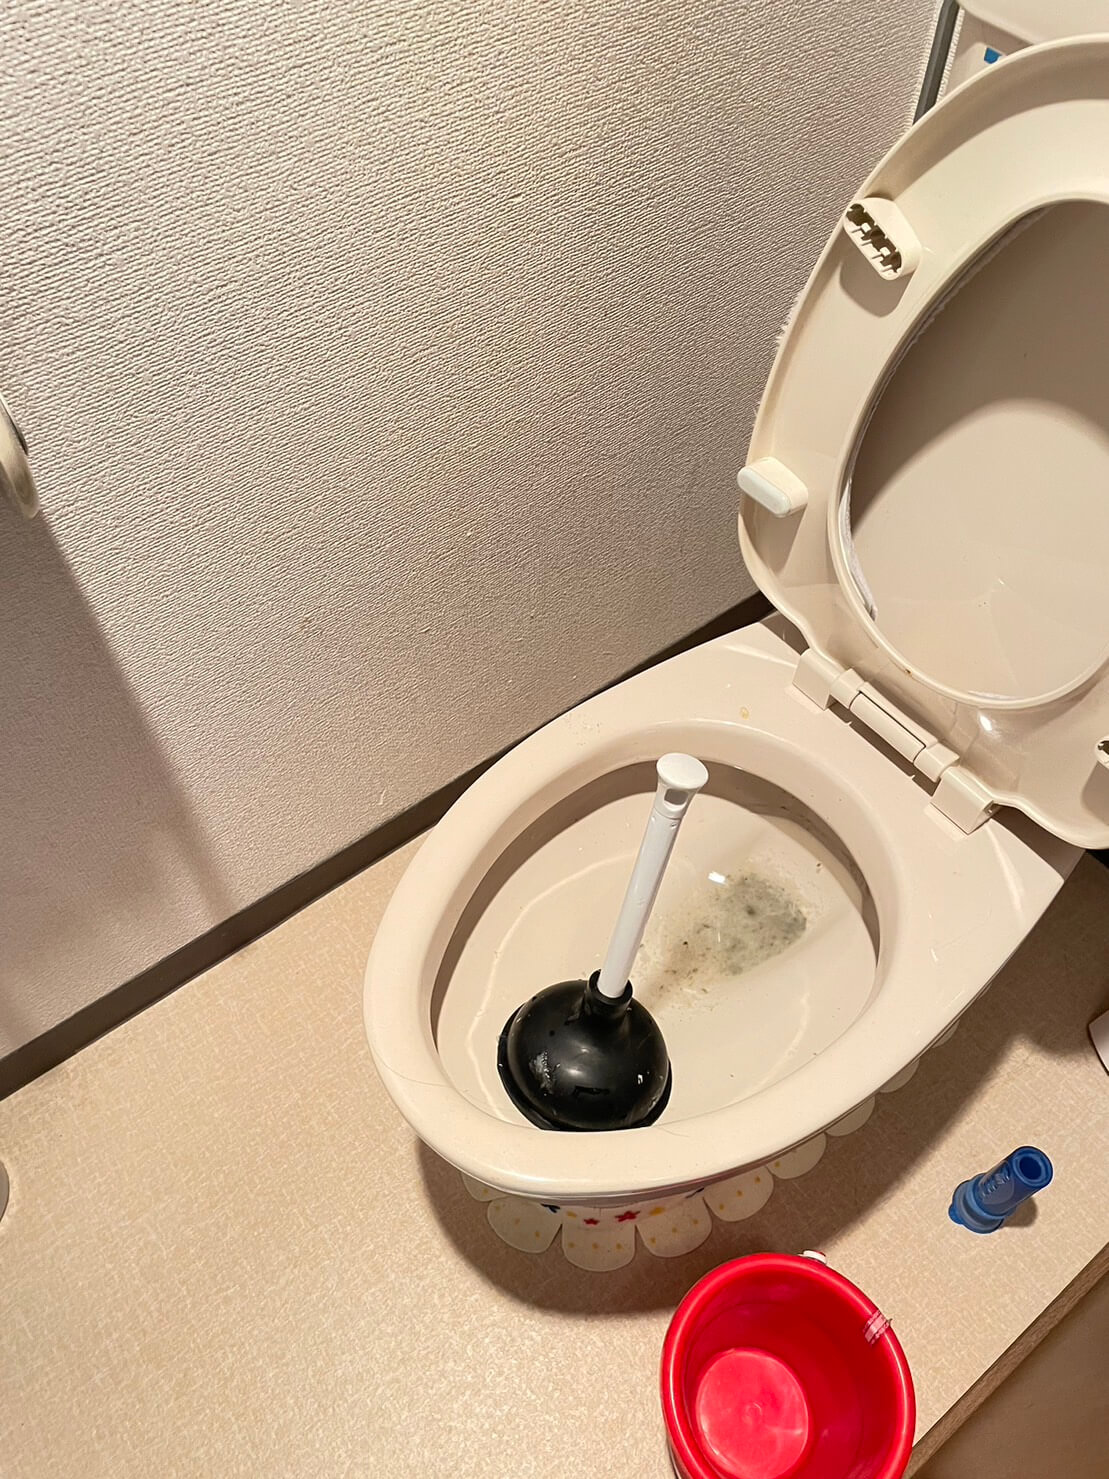 ローポンプによるトイレつまり解消-川越市石田